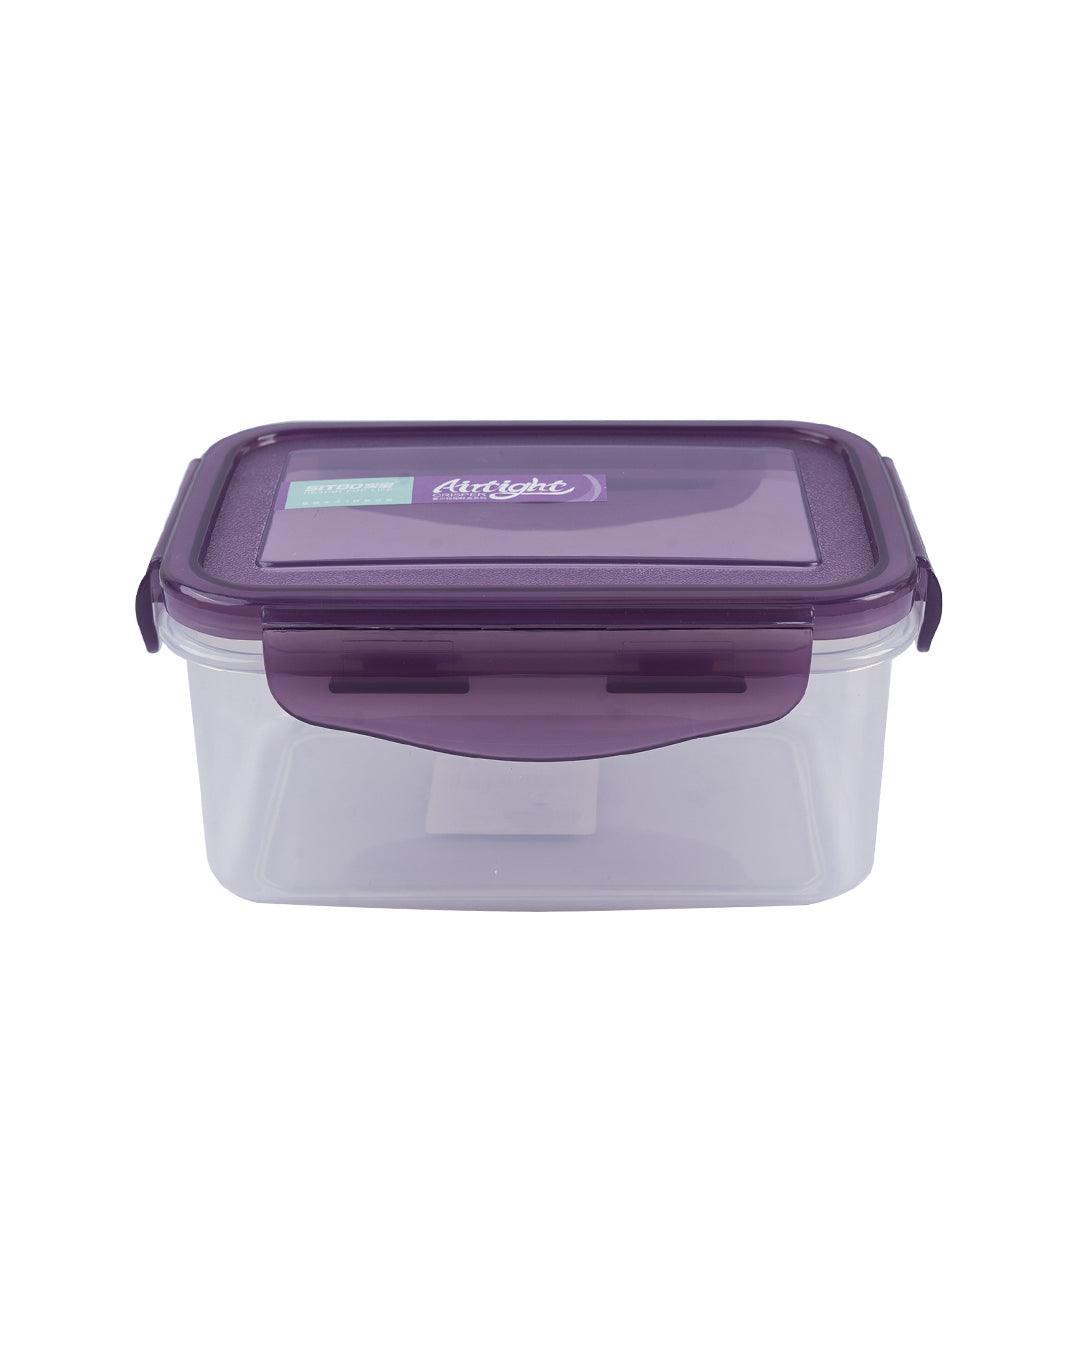 Container, Plastic, Purple, 600 mL - MARKET 99